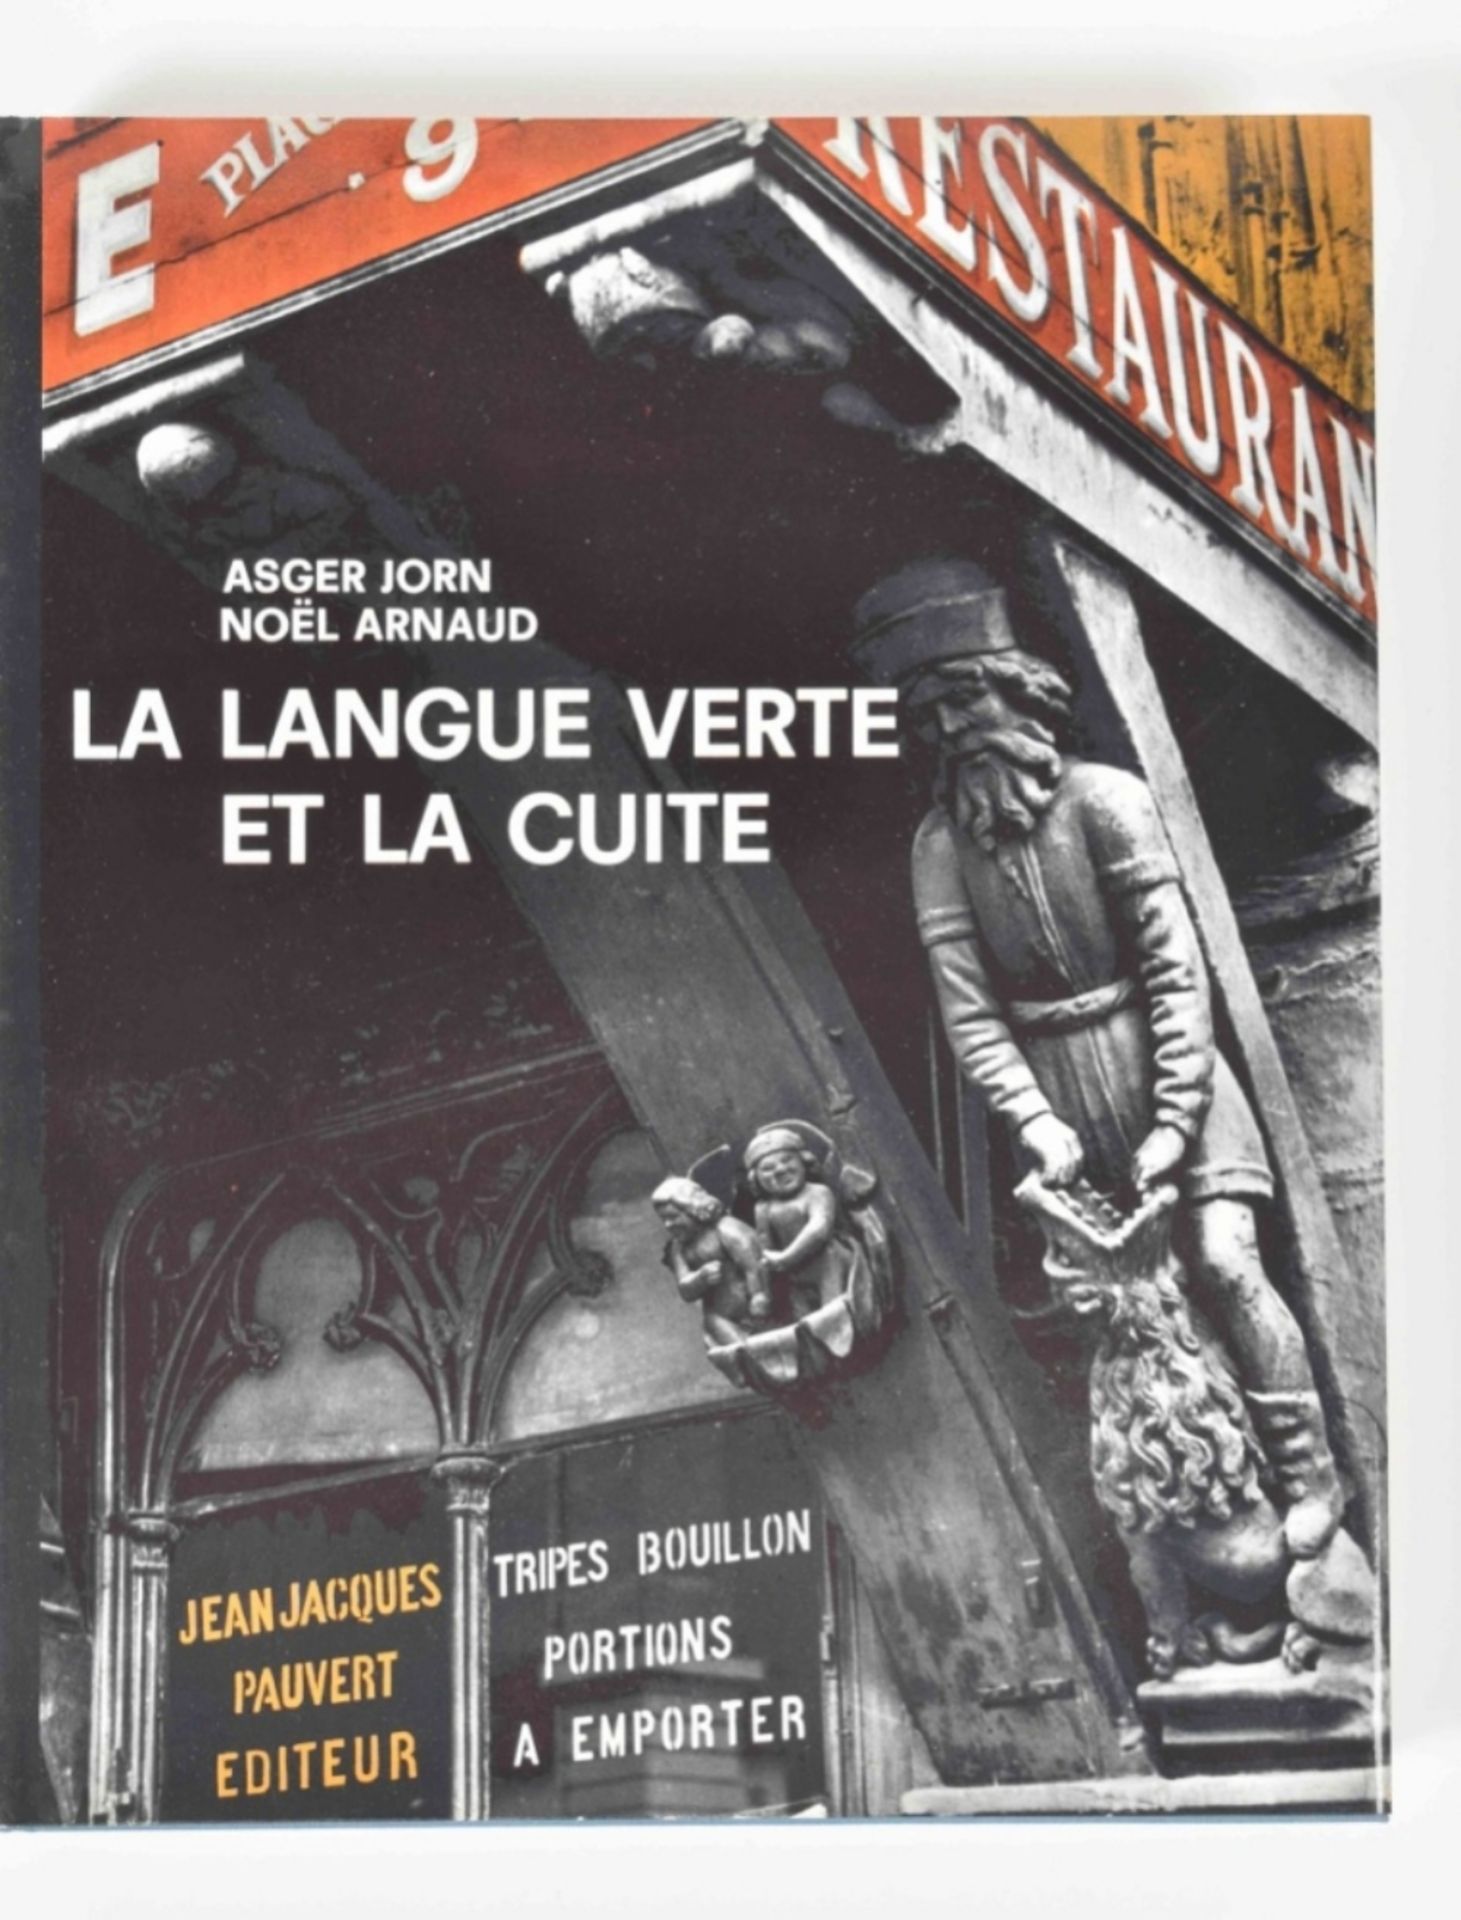 [Situationists] Asger Jorn, La Langue verte et la cuite - Image 9 of 10